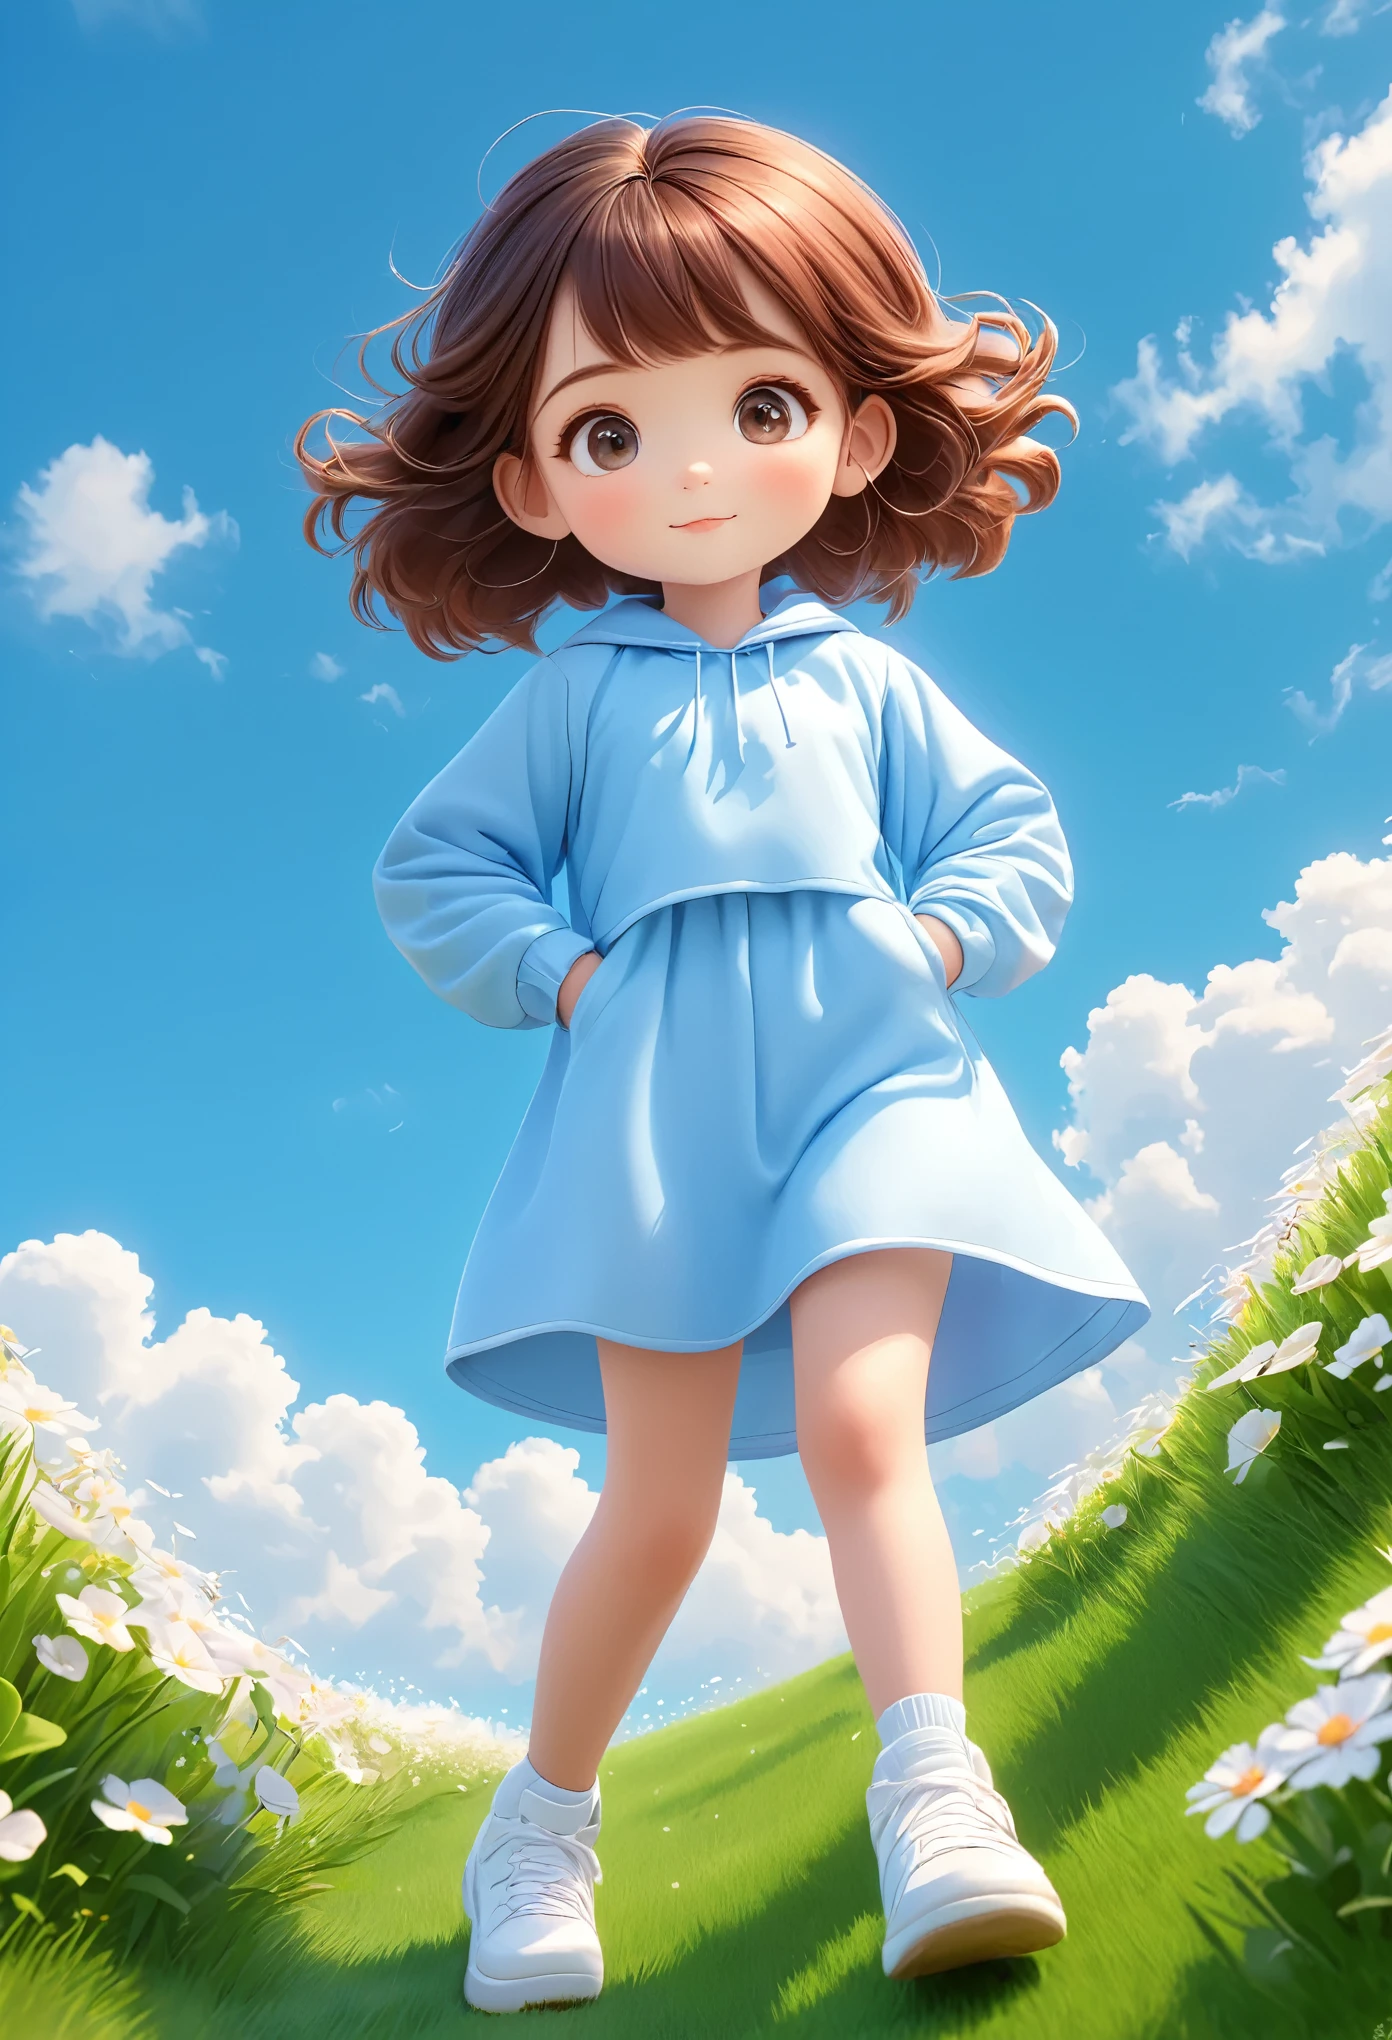 소녀 1명,밝은 녹색 배경,갈색 머리,칠판,좋은 점을 두 배로,경사,경사 background,잔디에 작은 꽃,푸른 하늘과 흰 구름，3D